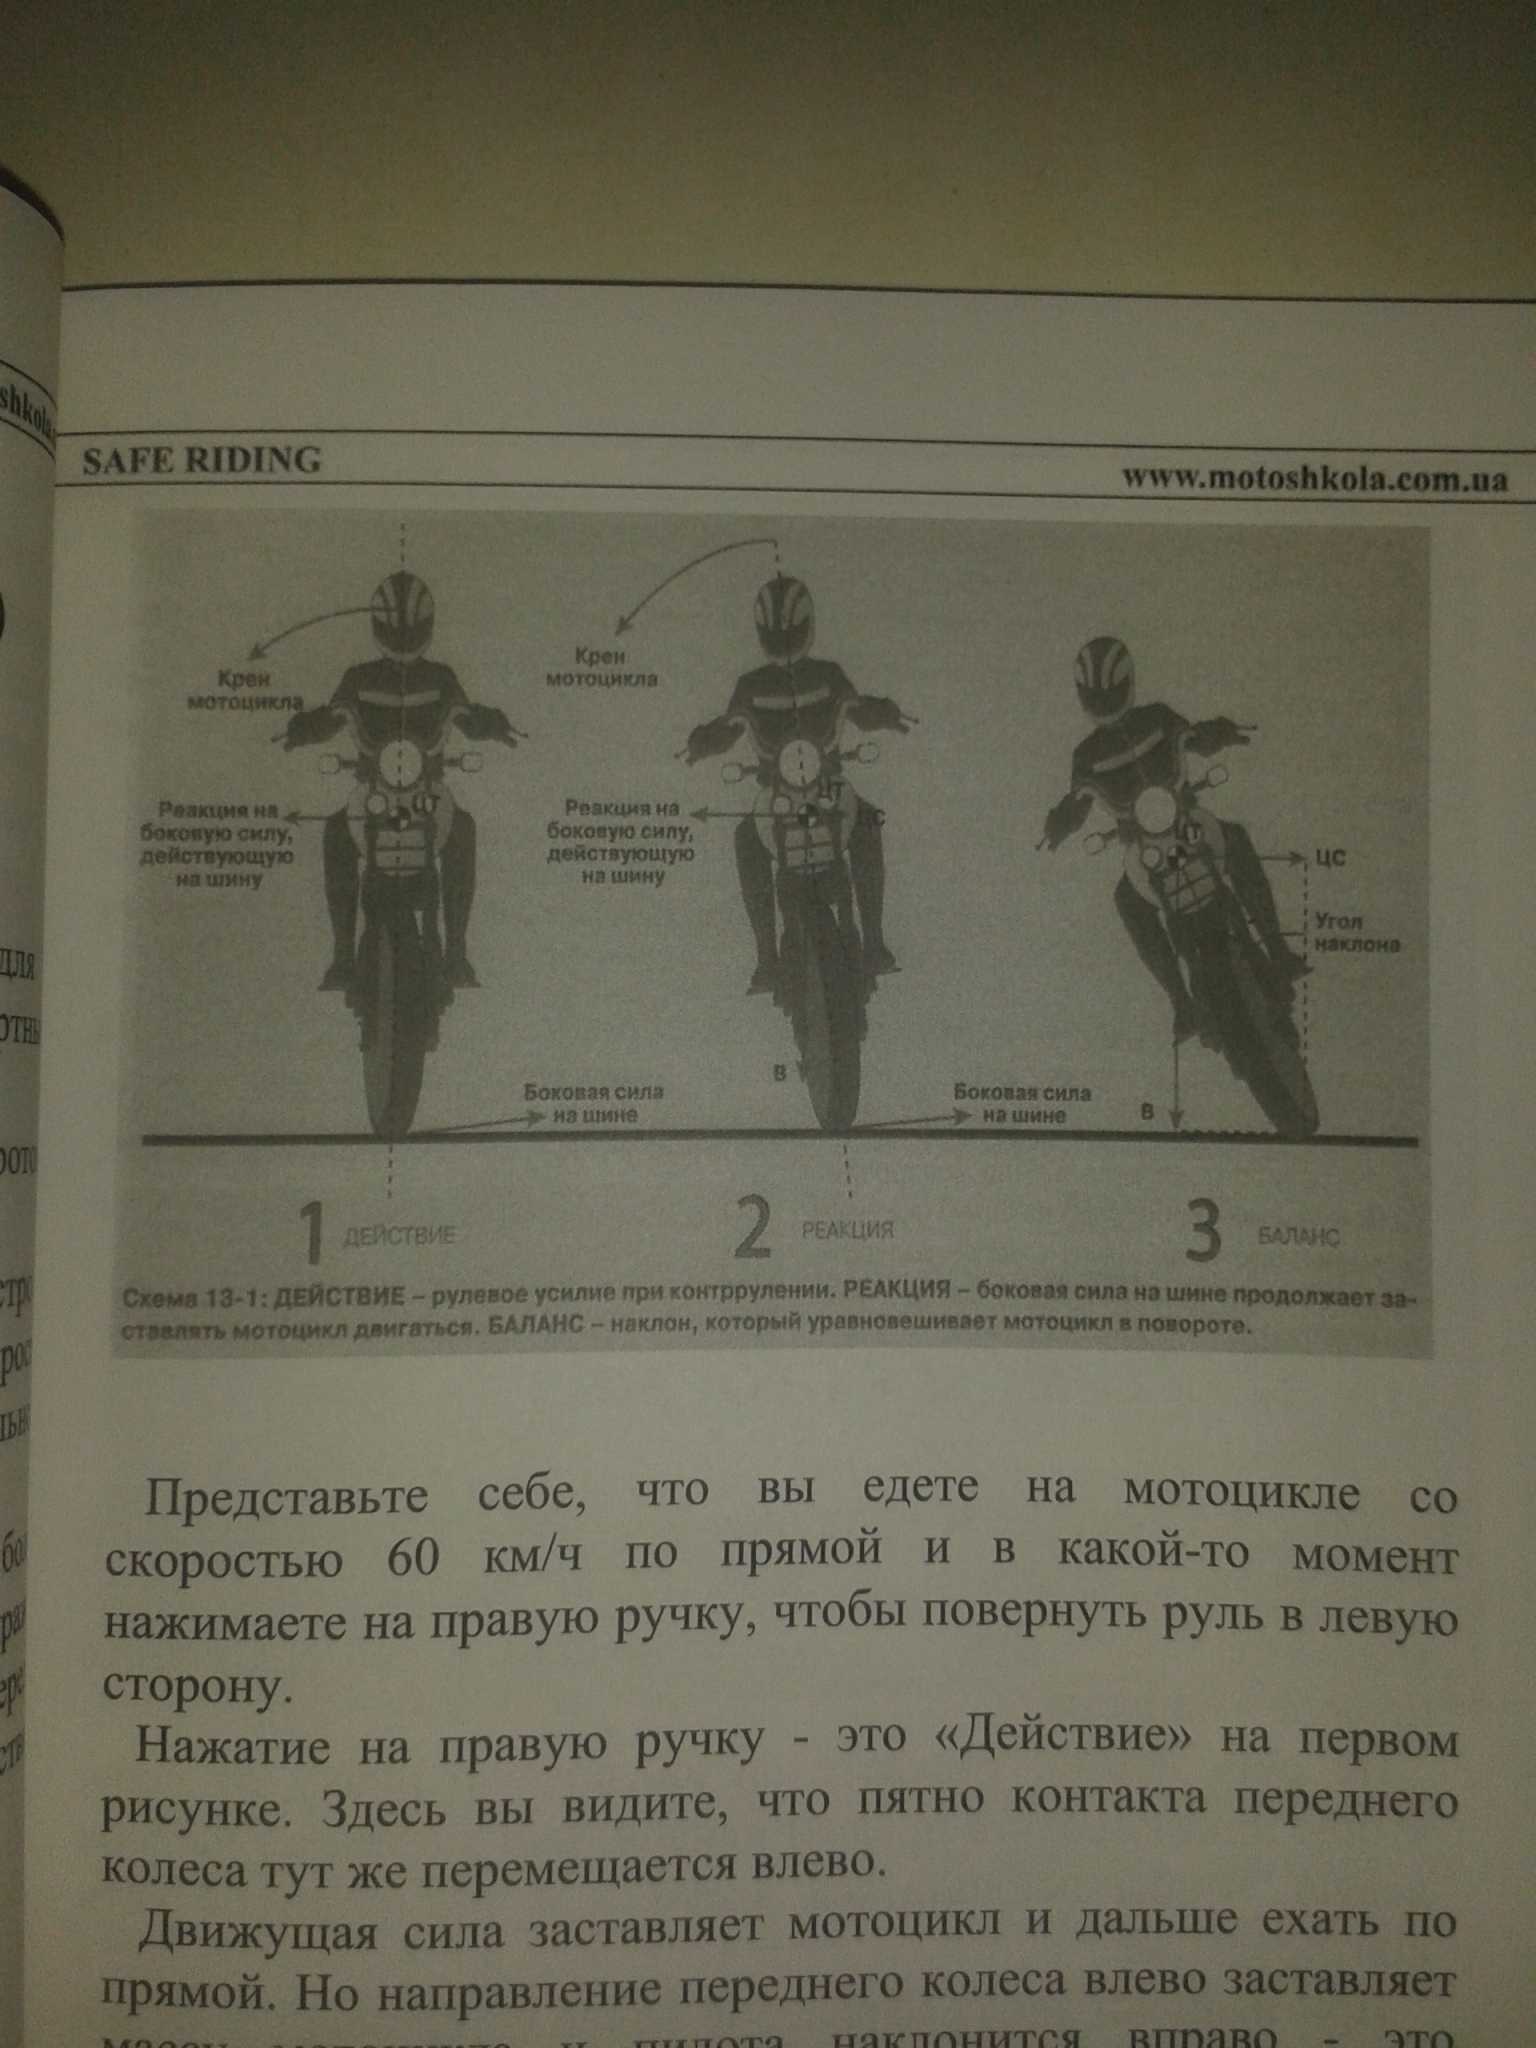 Безопасное управление мотоциклом.  120 стр Новое Инф на фото